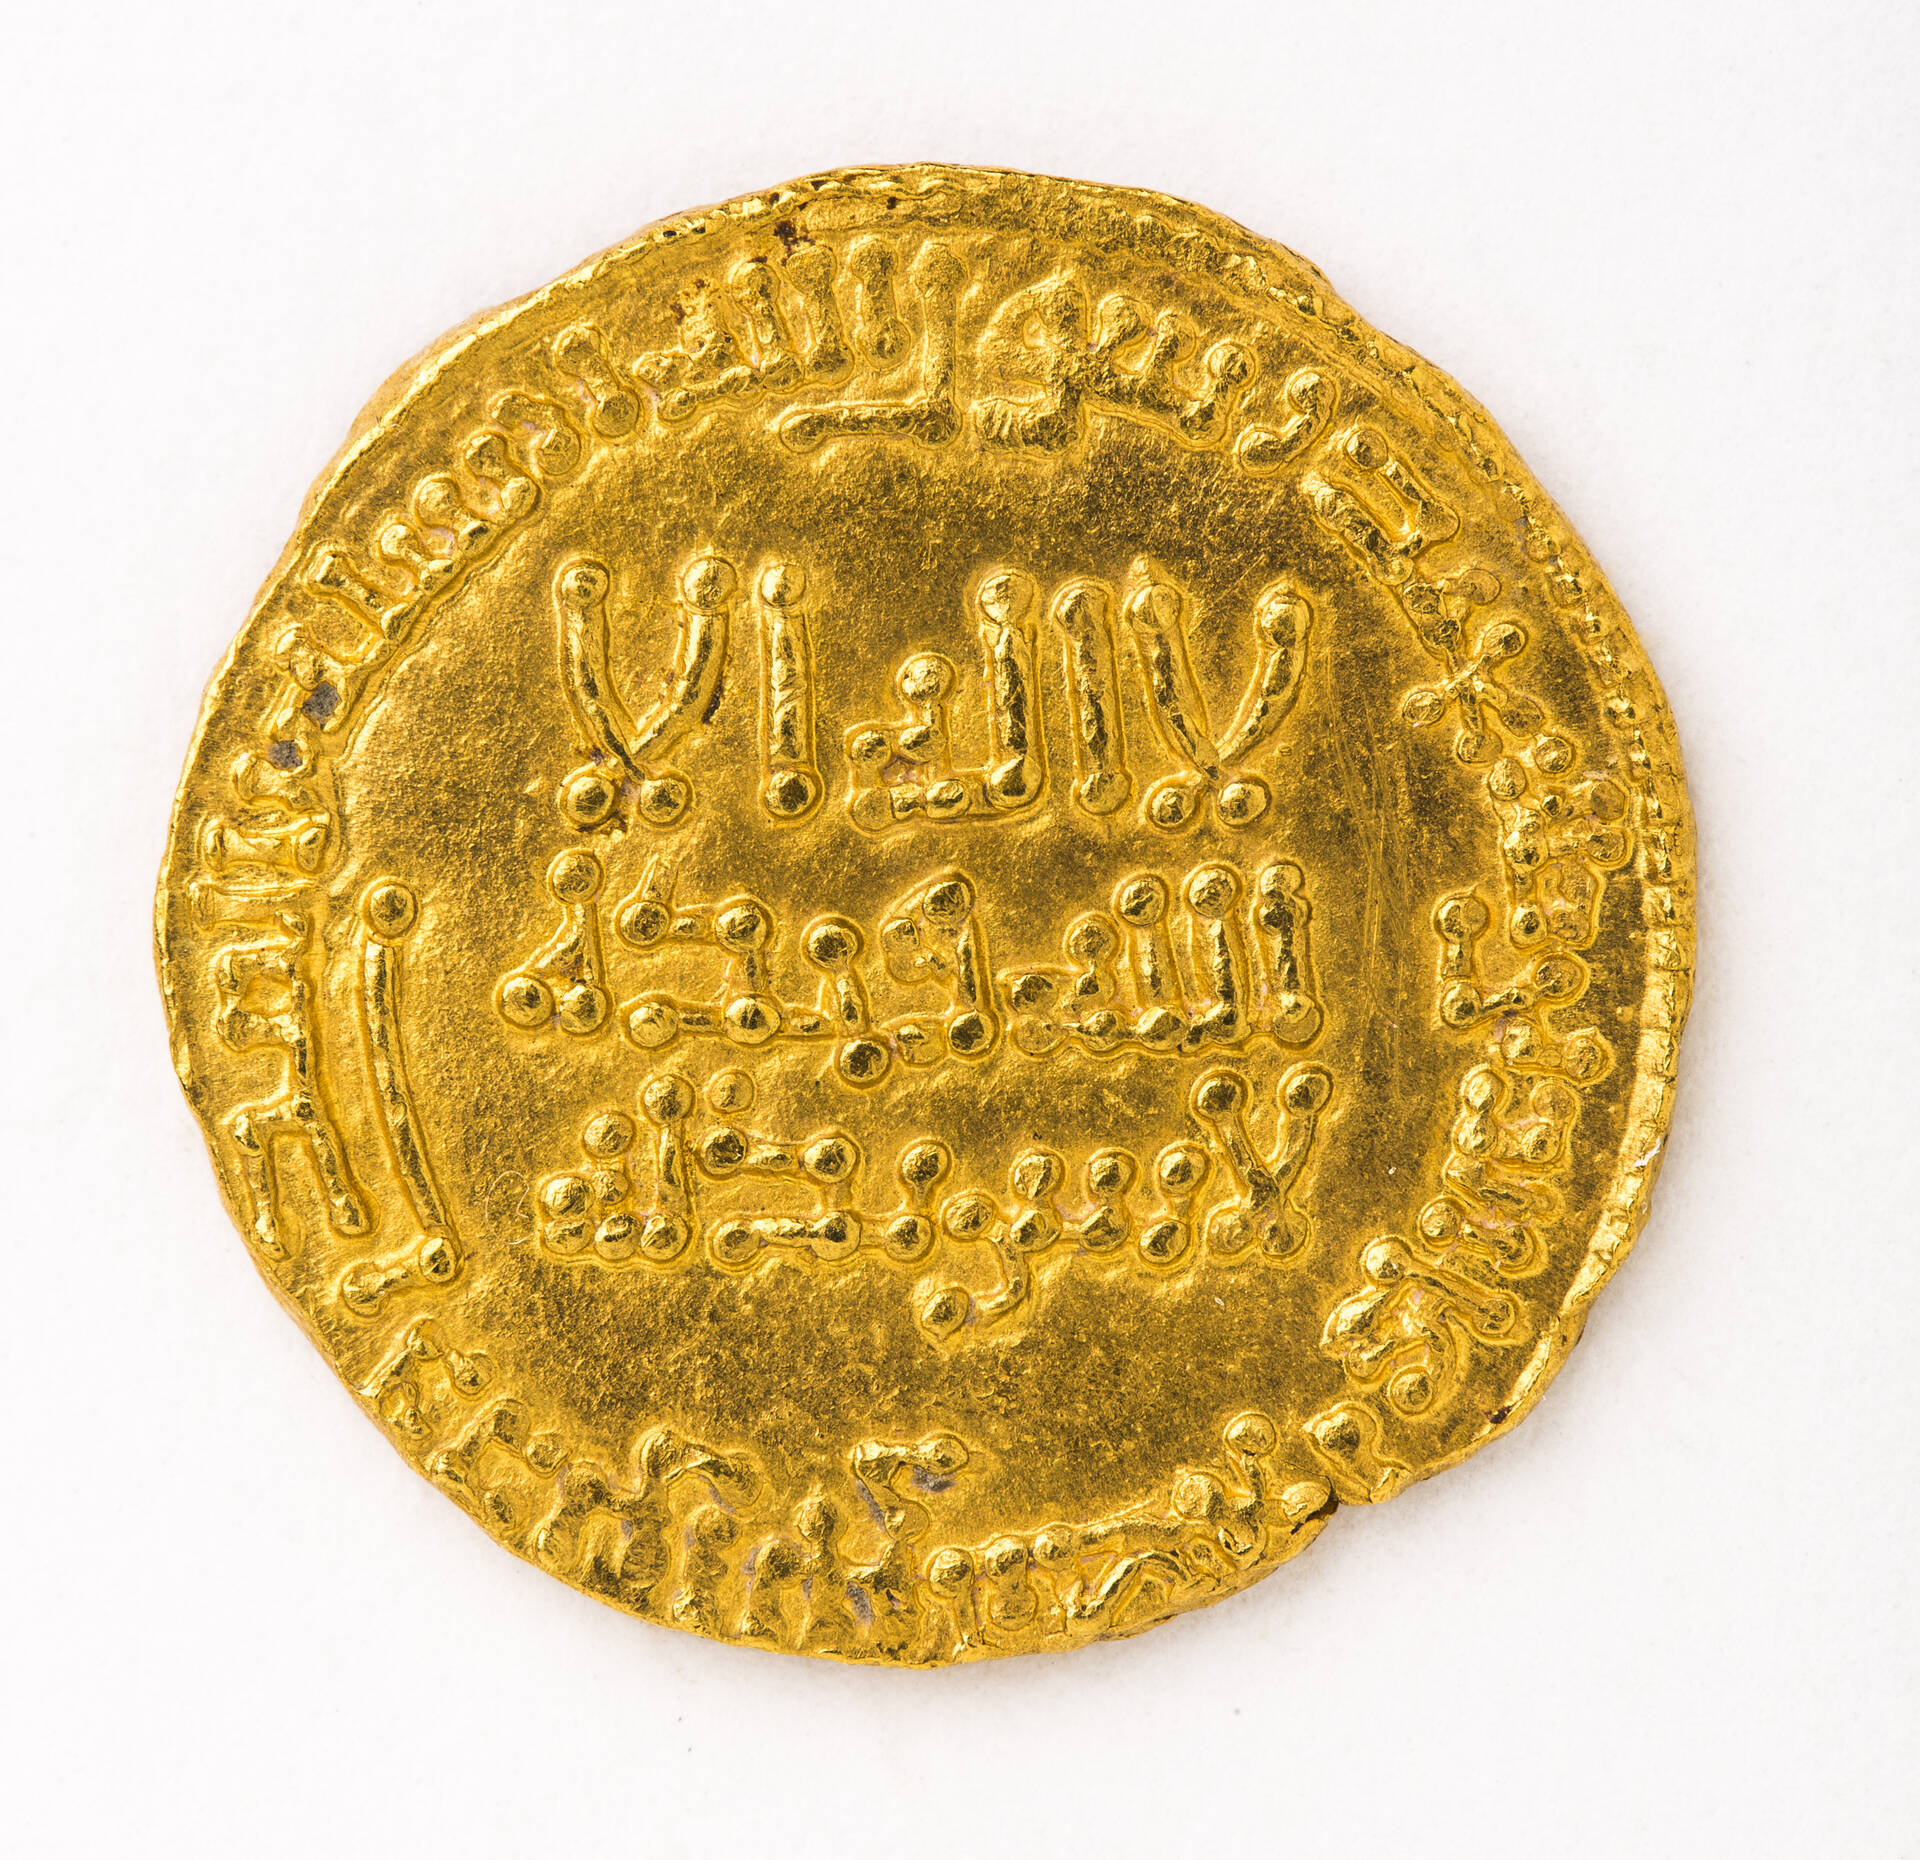 Dinar acuñado en El Cairo, 765 d.C. (148 de la Hégira), Oro acuñado, Catedral de San Salvador, Zaragoza. Foto: J. Garrido. Museo de Zaragoza.